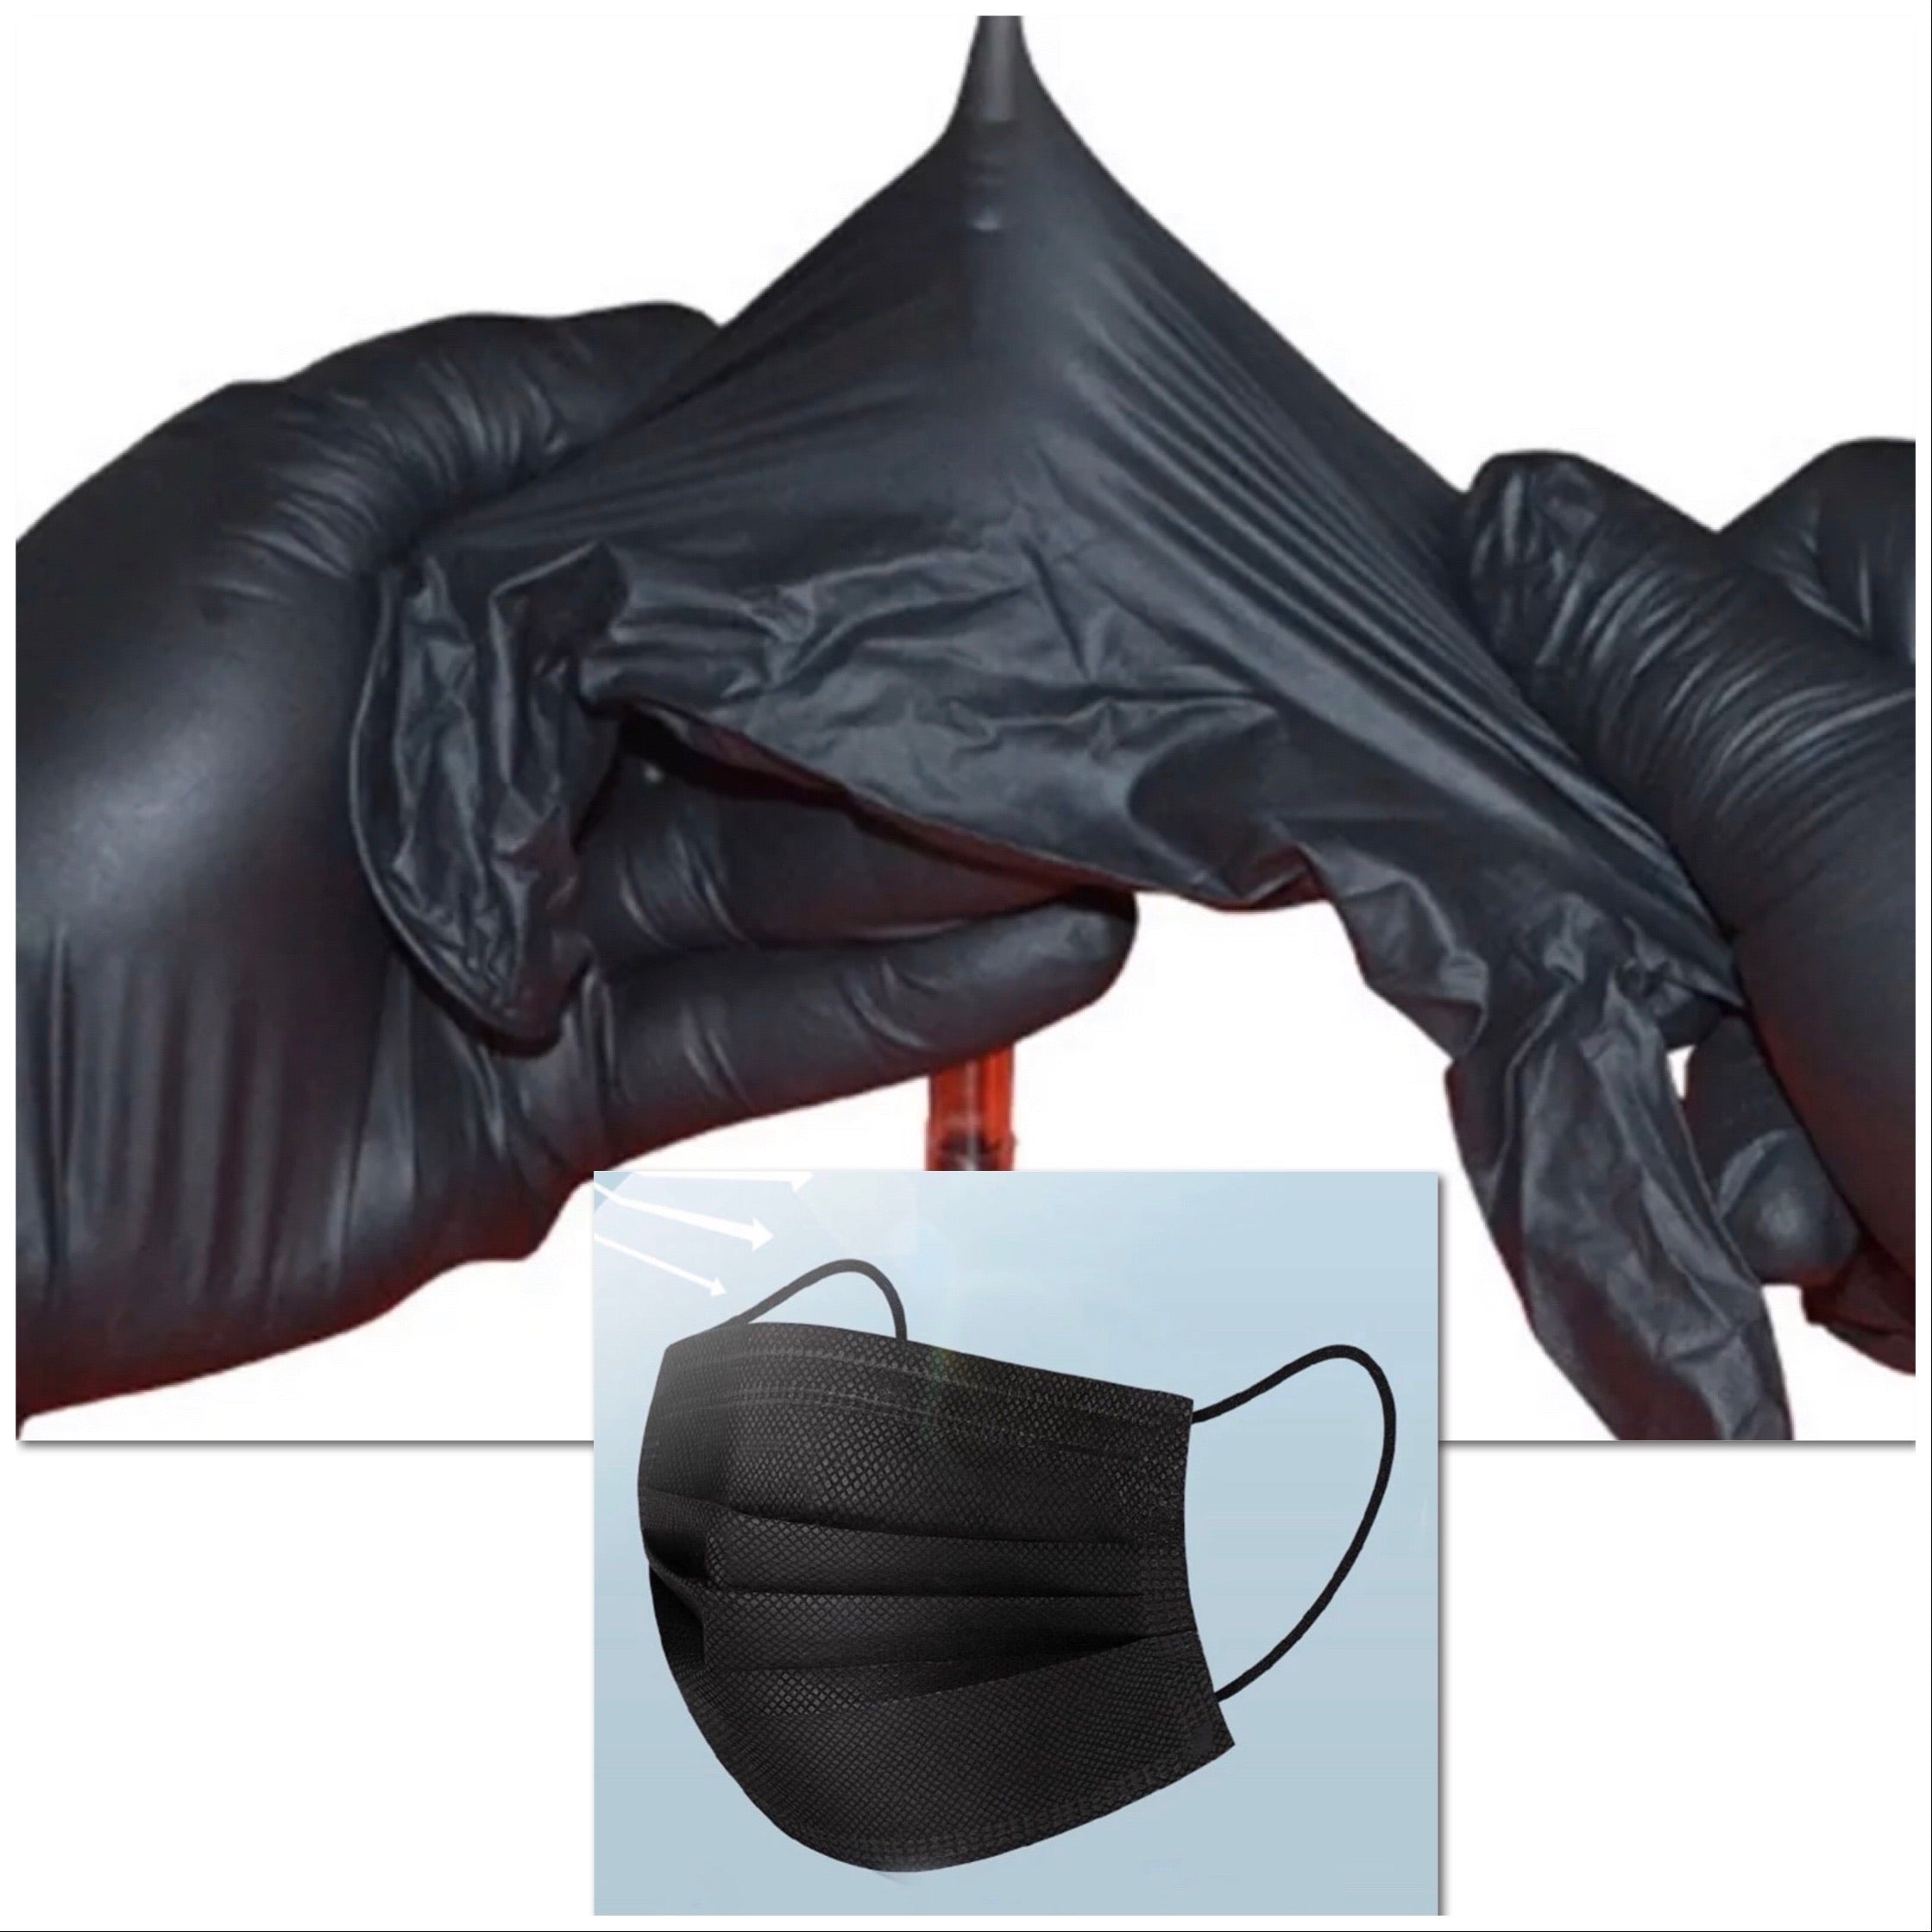 Black Disposable Masks / Gloves - FREE DELIVERY